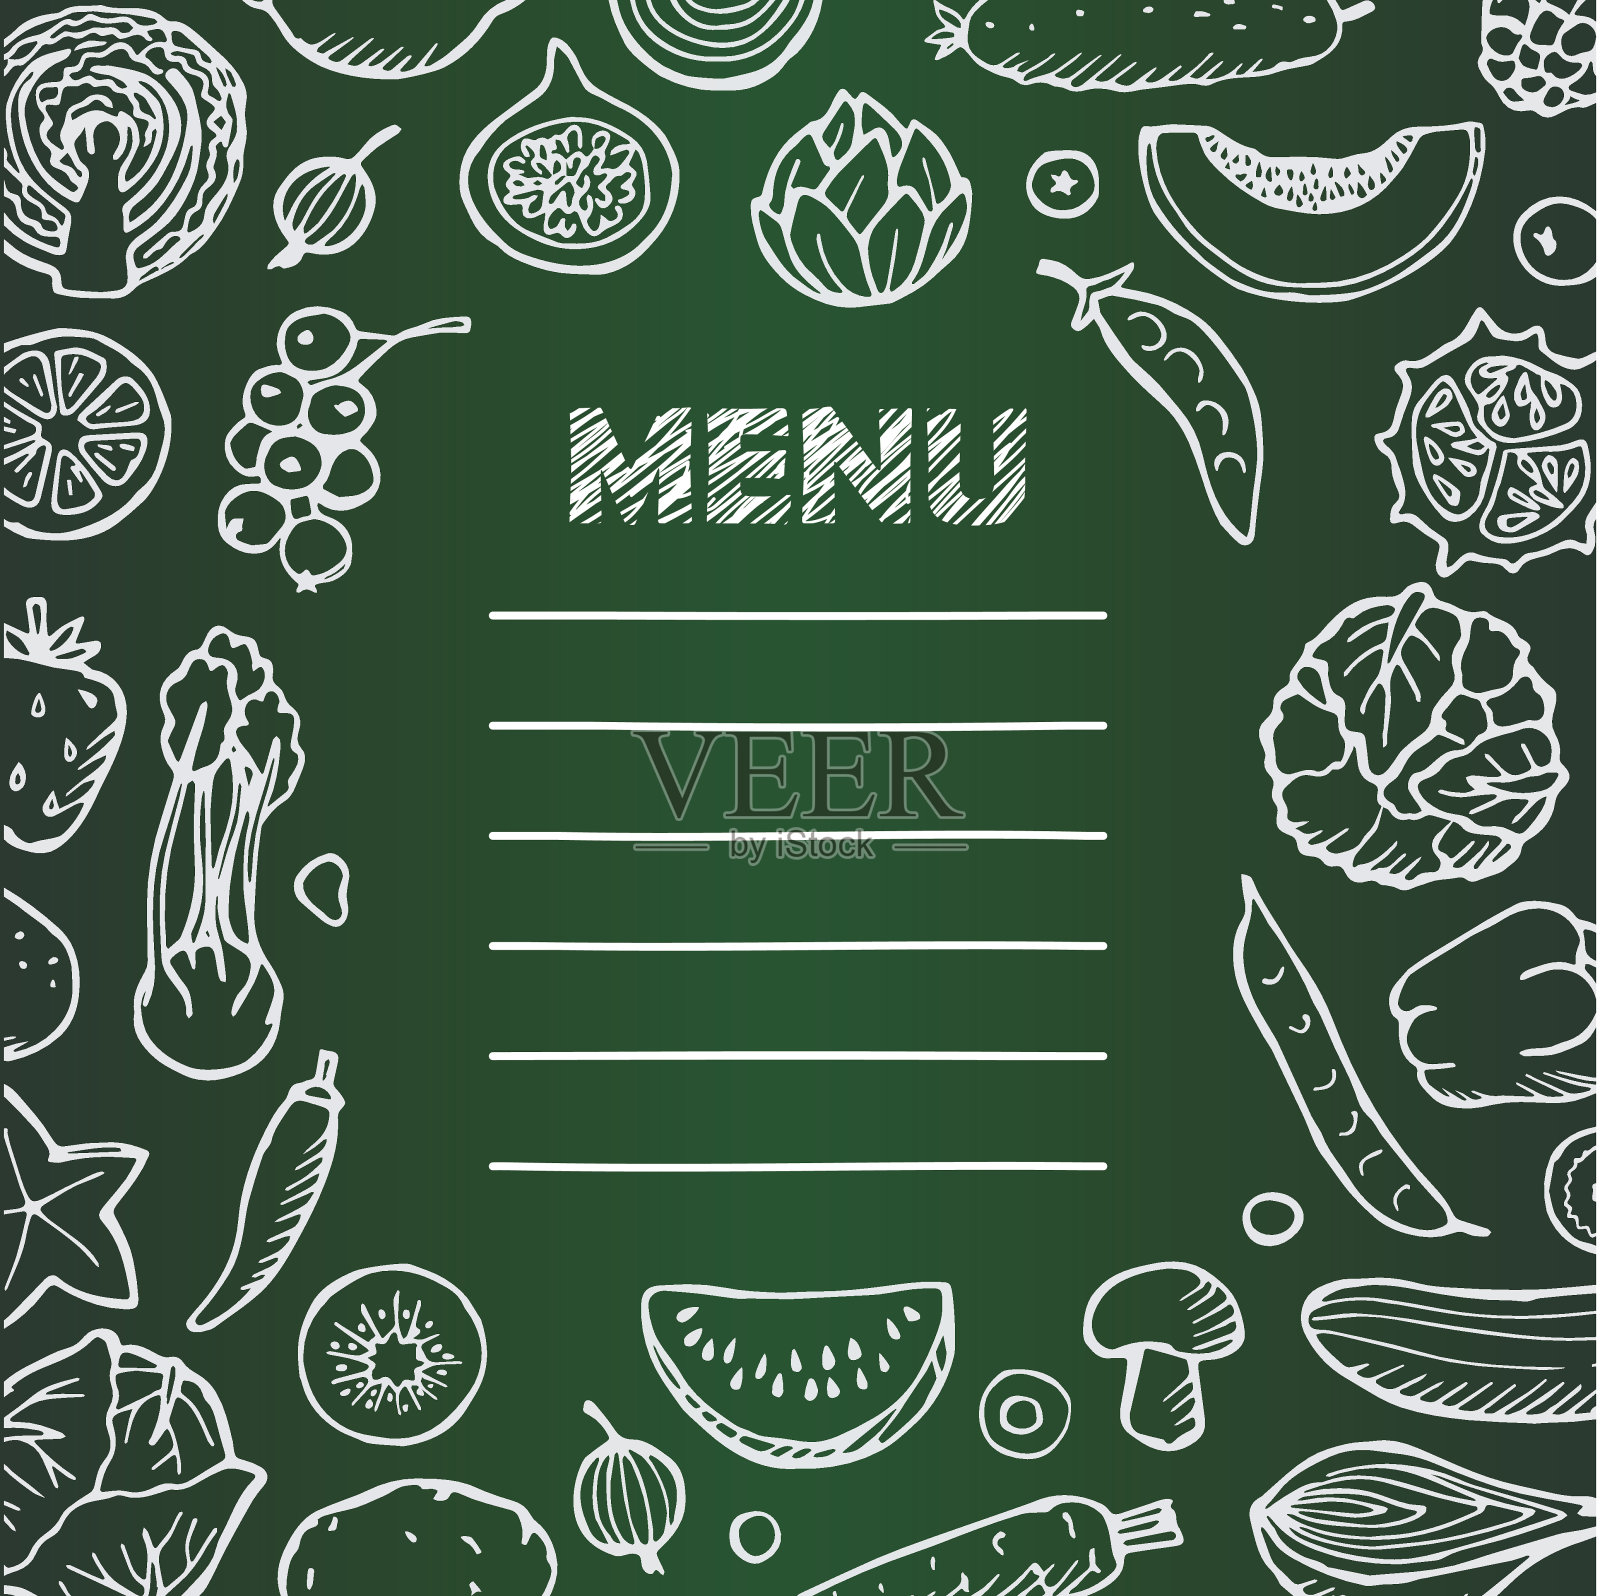 餐厅素食菜单与手绘涂鸦元素设计模板素材